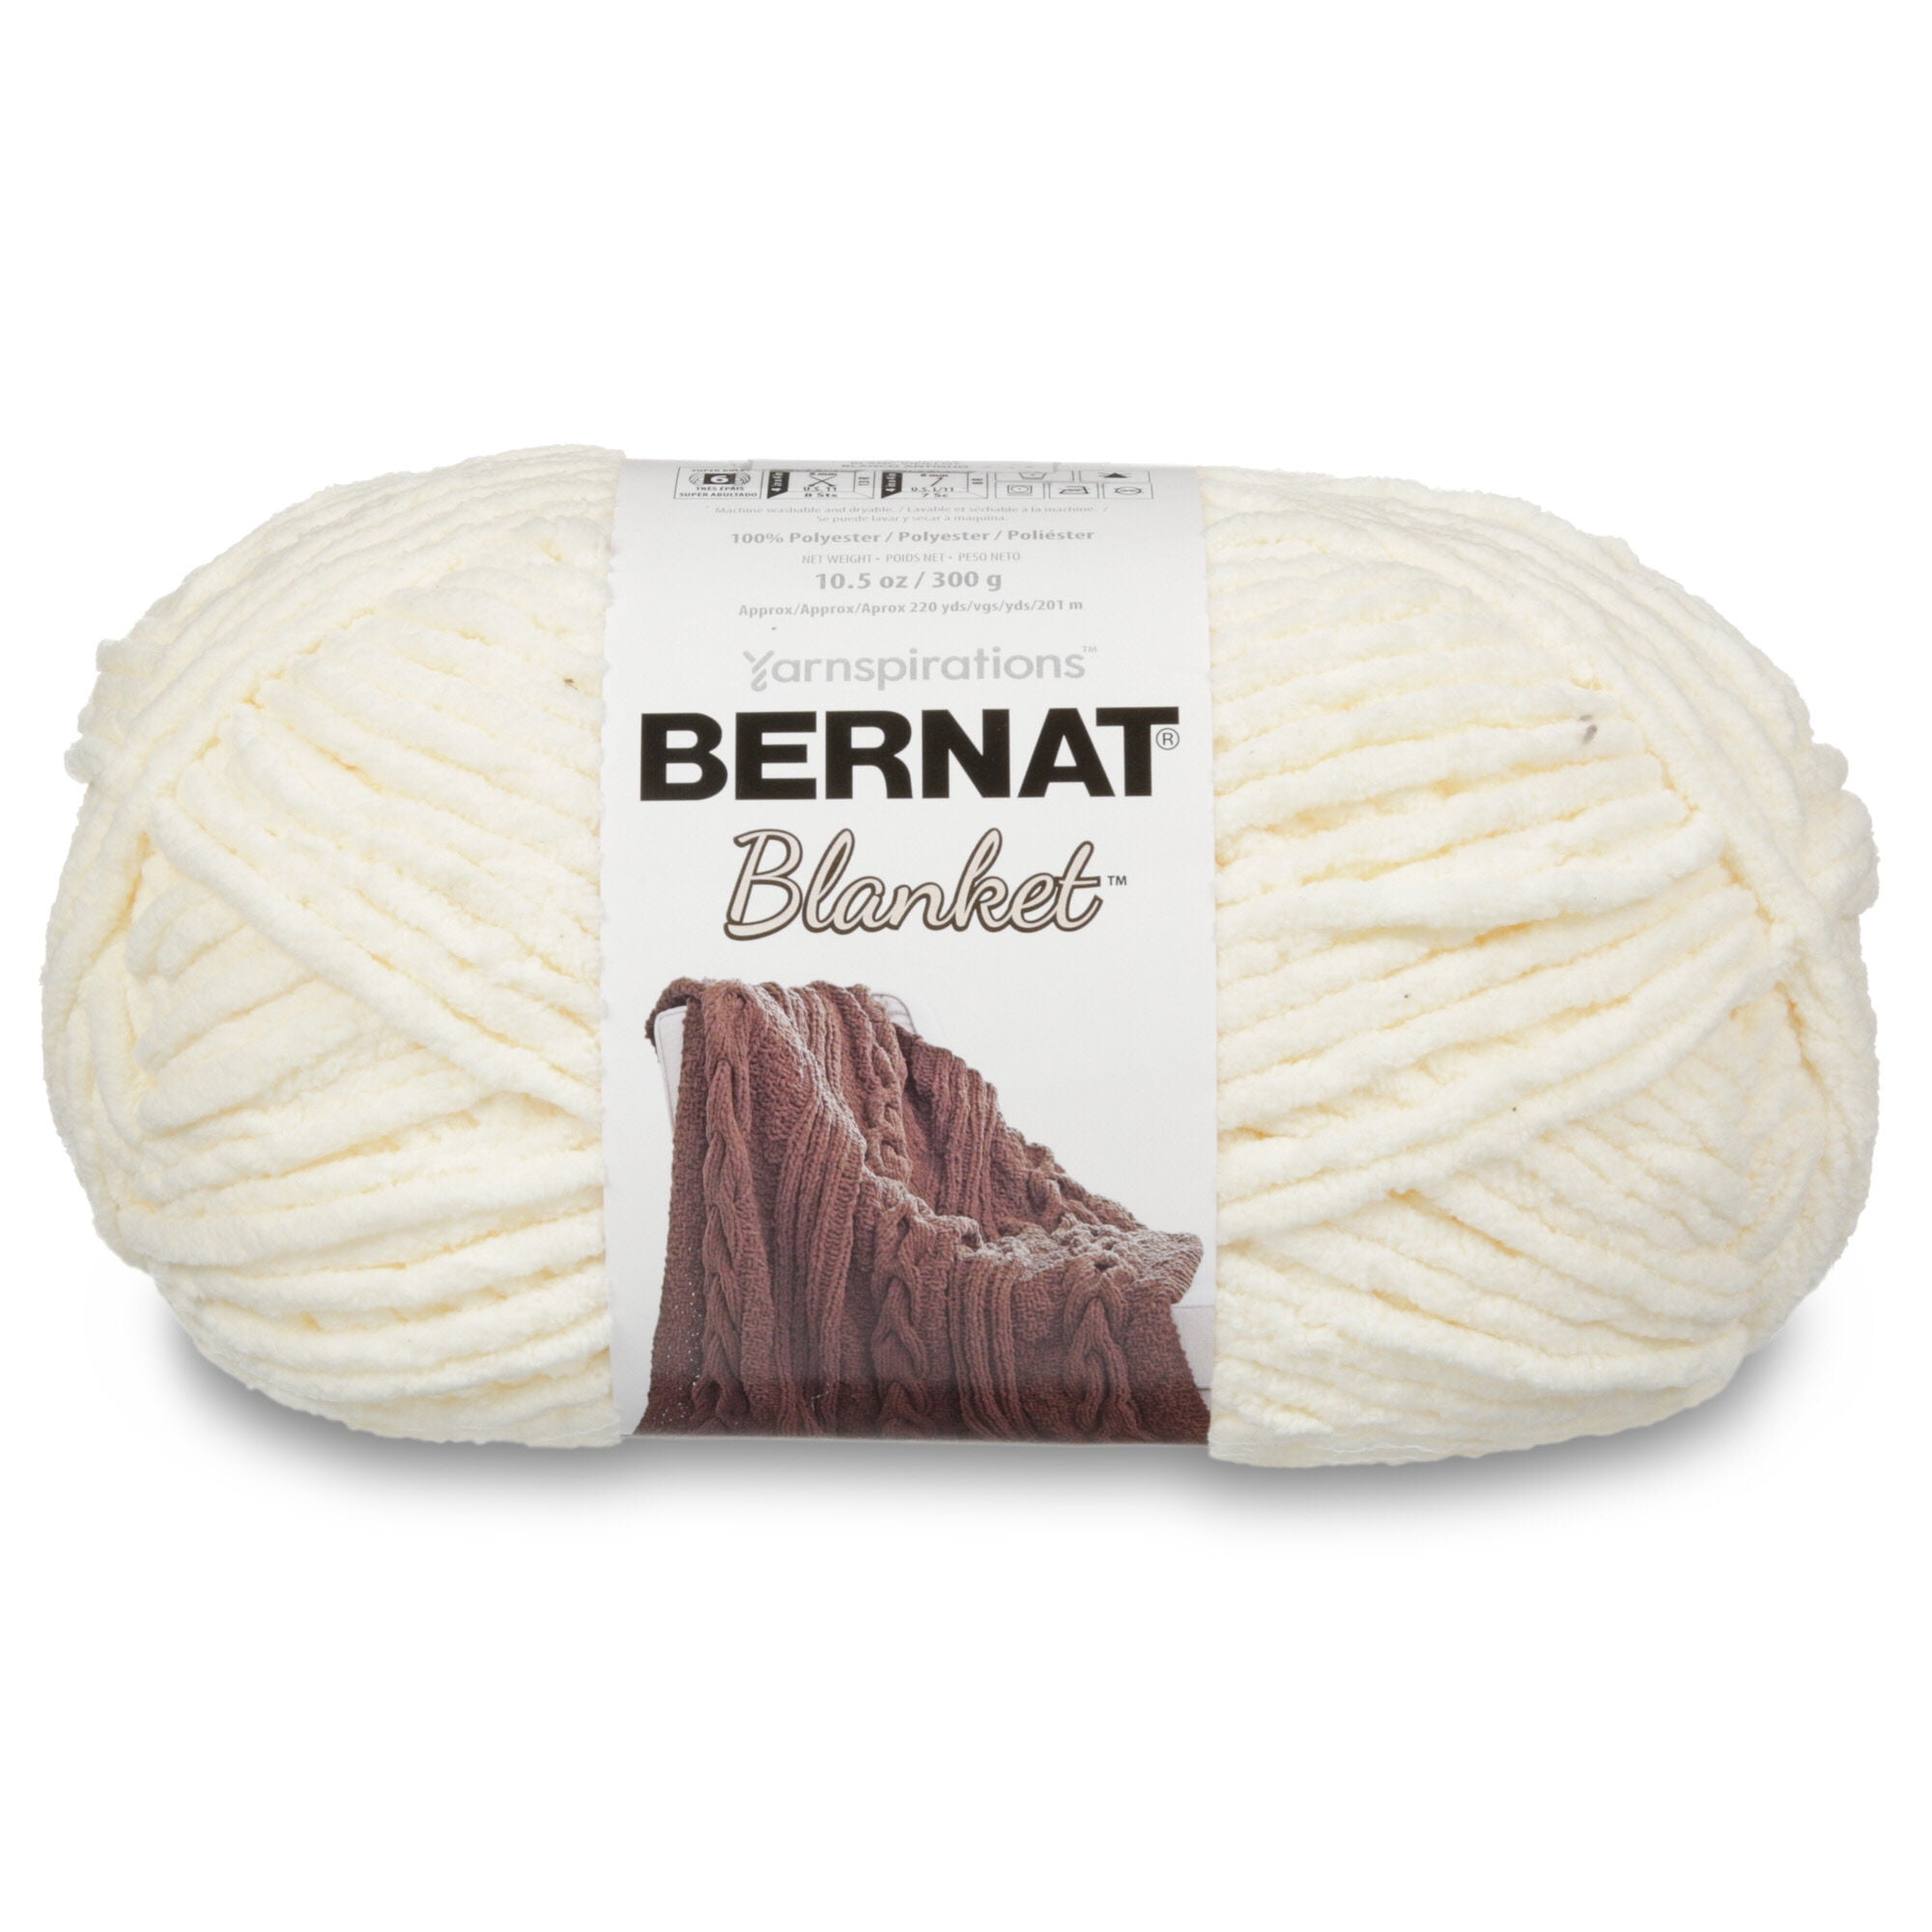 Bernat Blanket #6 Super Bulky Polyester Yarn, Vintage White 10.5oz/300g, 220 Yards